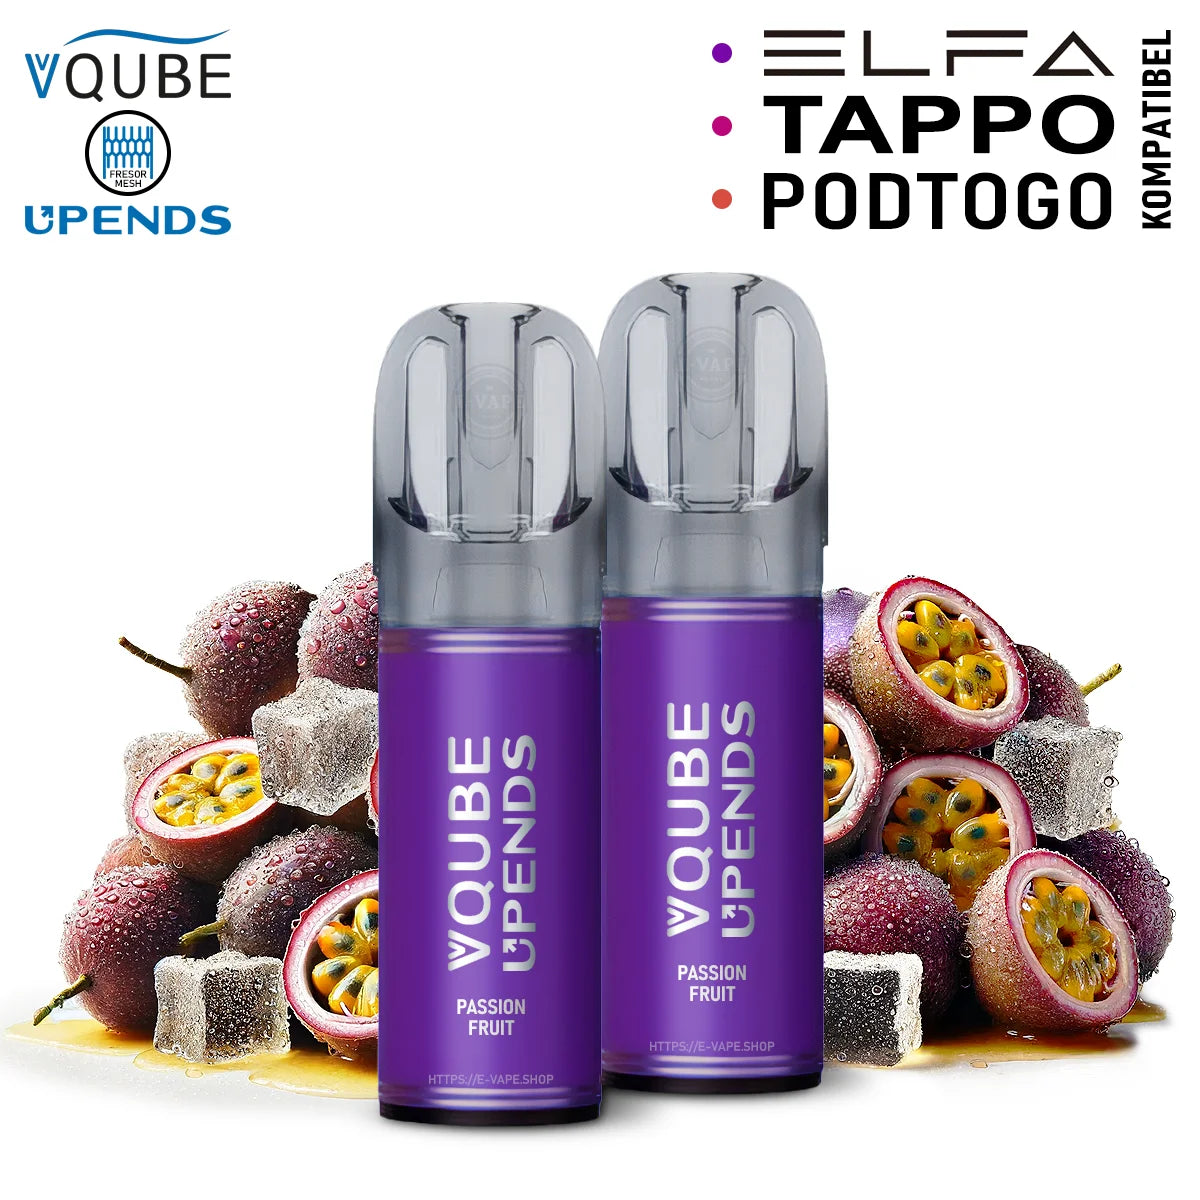 Vqube Upends Pod Passionfruit 20mg ELFA / Tappo / Pod2Go